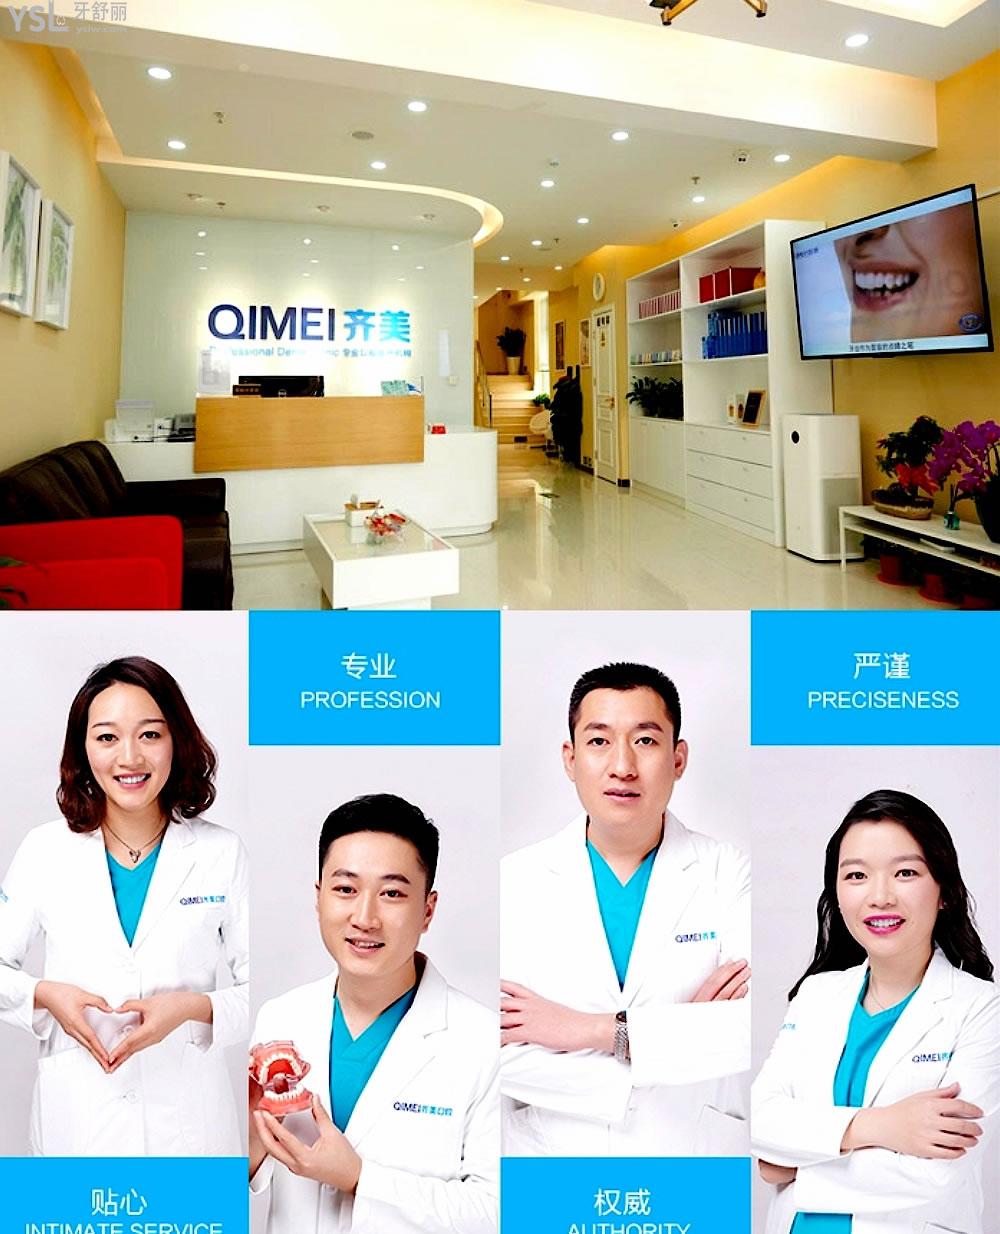 北京齐美口腔医院怎么样制定收费标准的,朝阳区群众推荐矫正种植牙齿好又便宜!